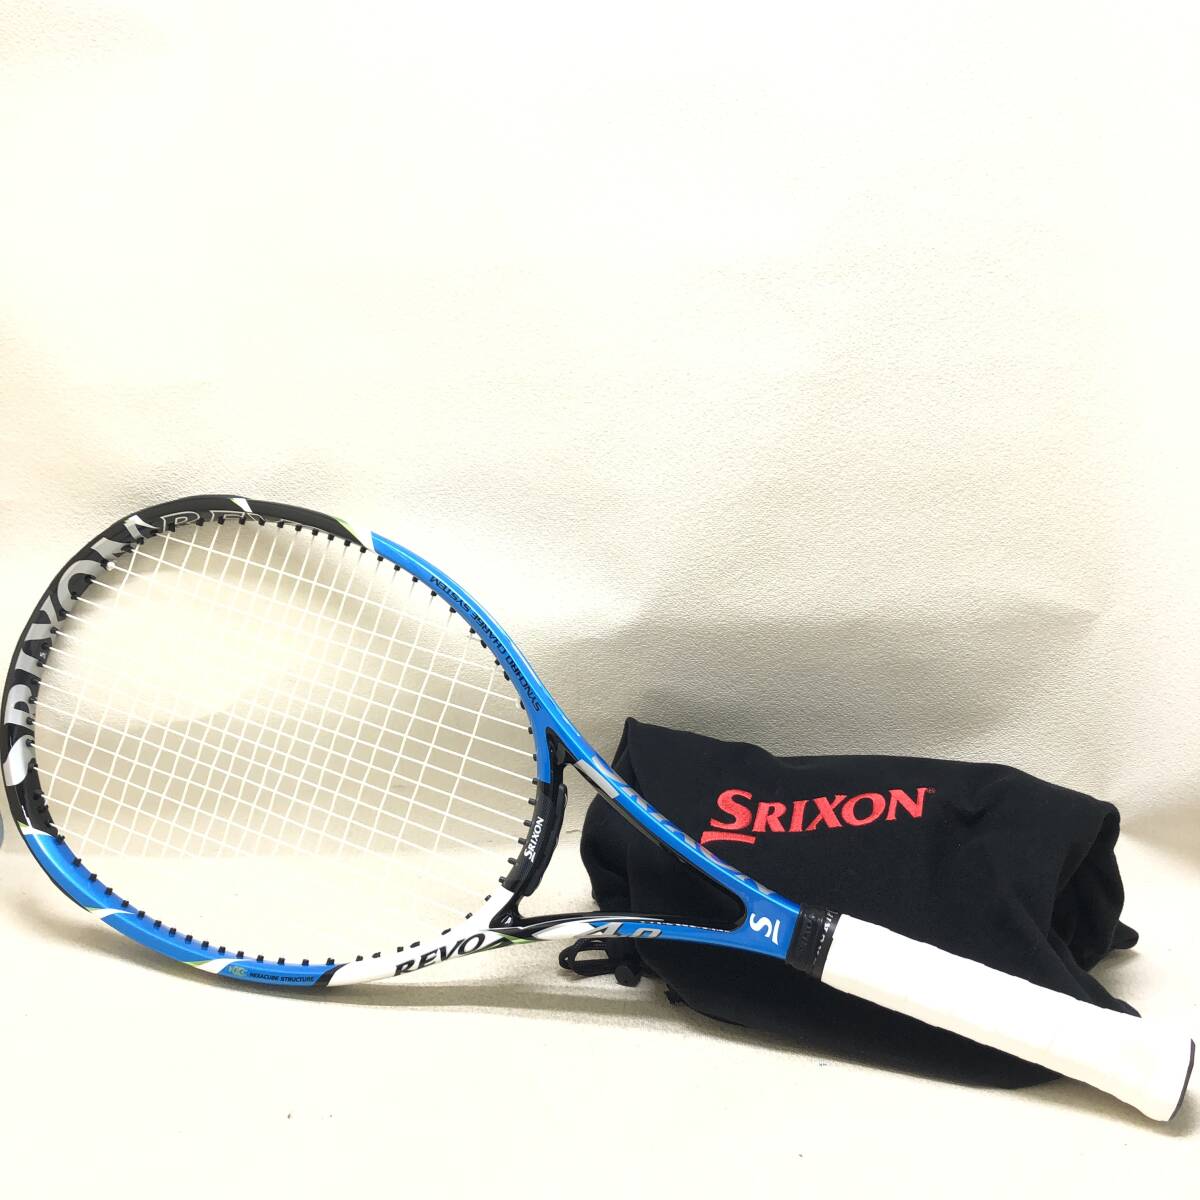 △SRIXON REVO X 4.0 テニスラケット スリクソン レヴォ DUNLOP ダンロップ テニス ラケット スポーツ 中古品△G73460の画像1